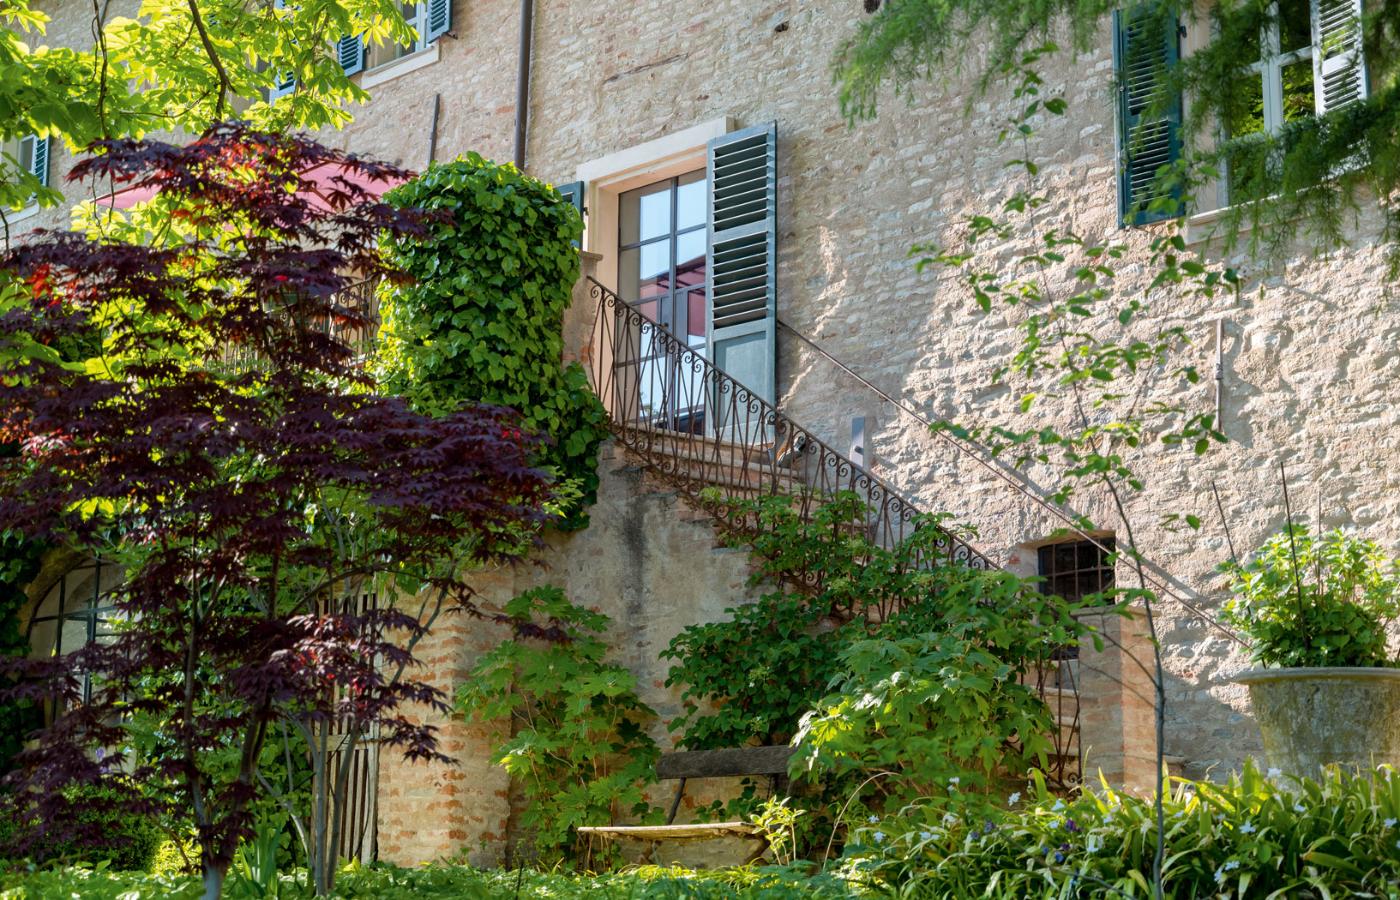 Dwustuletni dom w niewielkiej miejscowości Neviglie, między Turynem a Genuą, wcześniej był letnią posiadłością rodziny Bona – zamożnych mieszczan z Turynu.